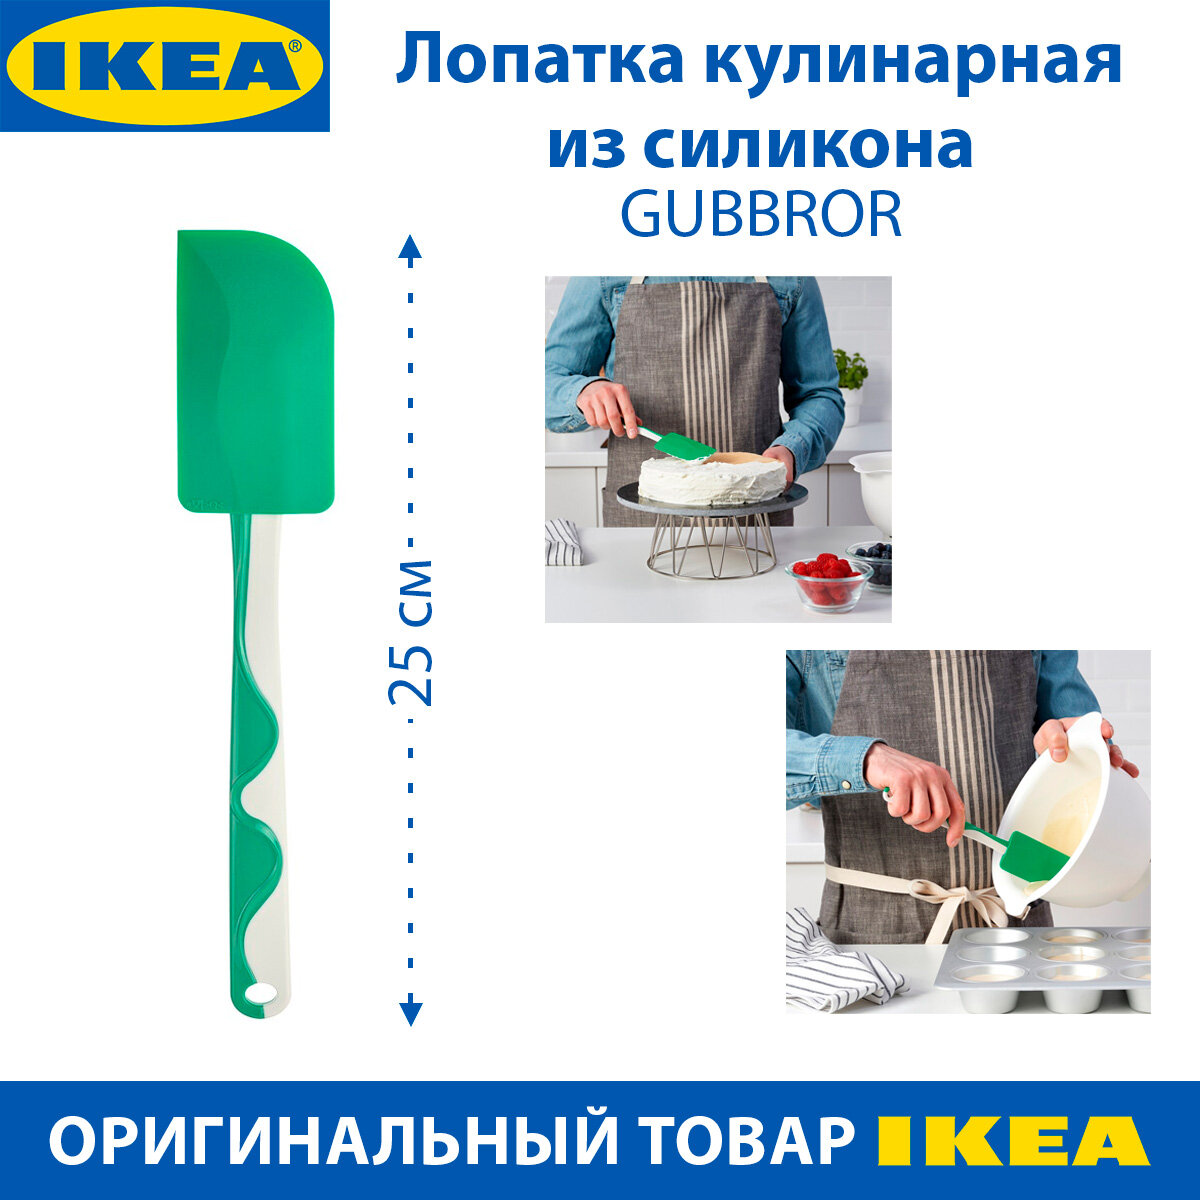 Лопатка кулинарная IKEA - GUBBROR (губброра), из силикона, зеленая, 25 см, 1 шт